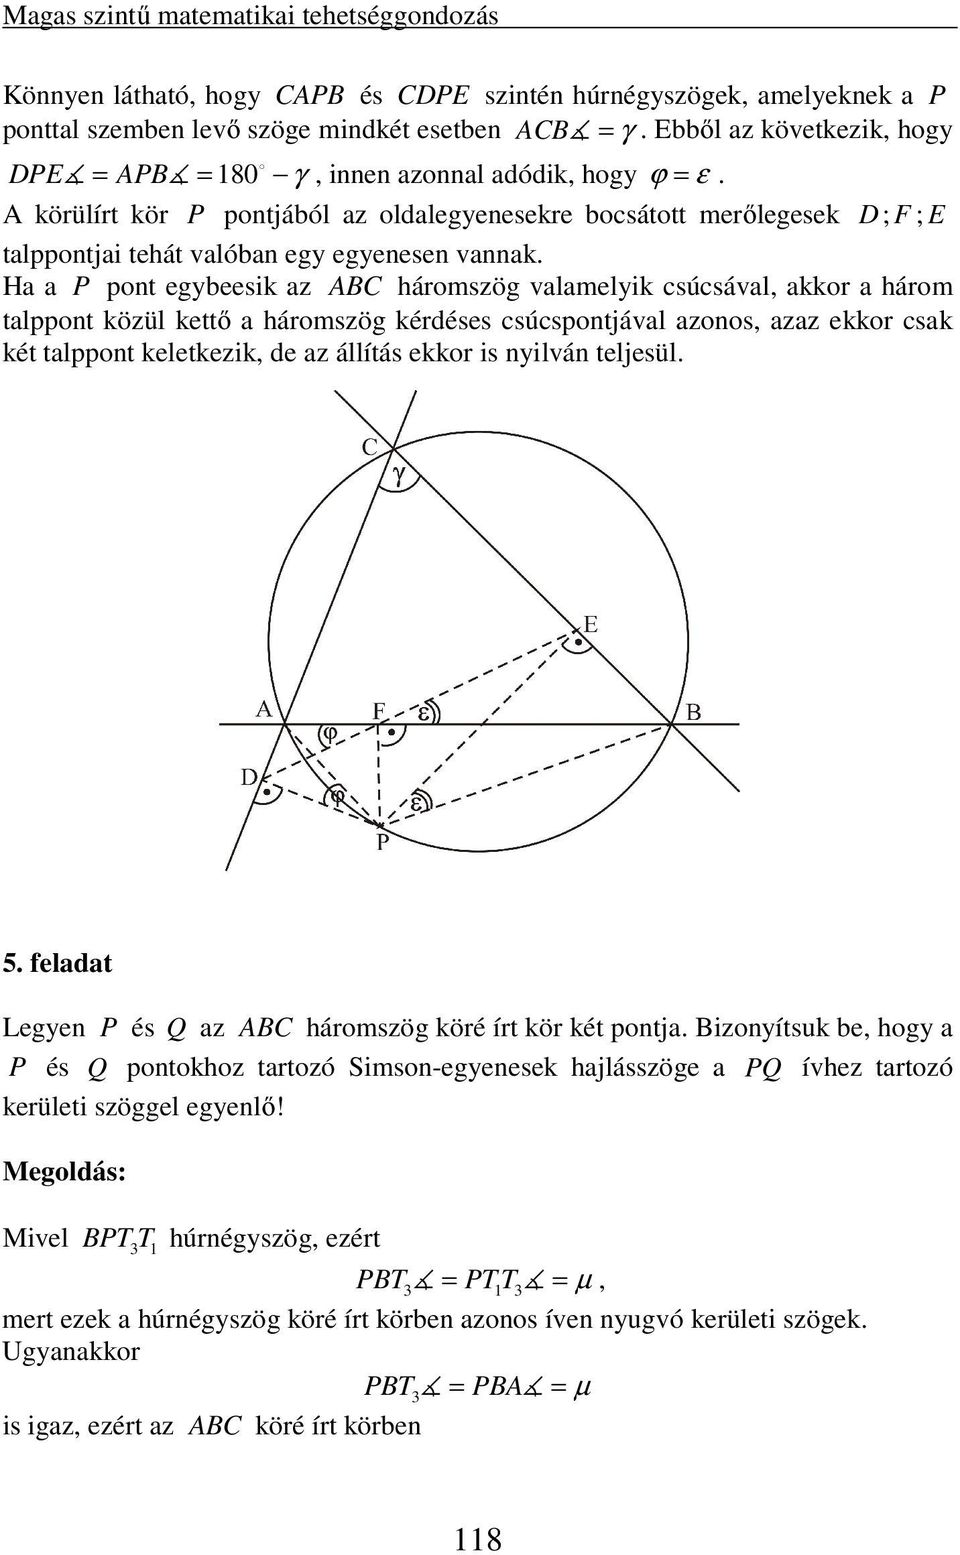 A körülírt kör P pontjából az oldalegyenesekre bocsátott merőlegesek D; F ; E talppontjai tehát valóban egy egyenesen vannak.